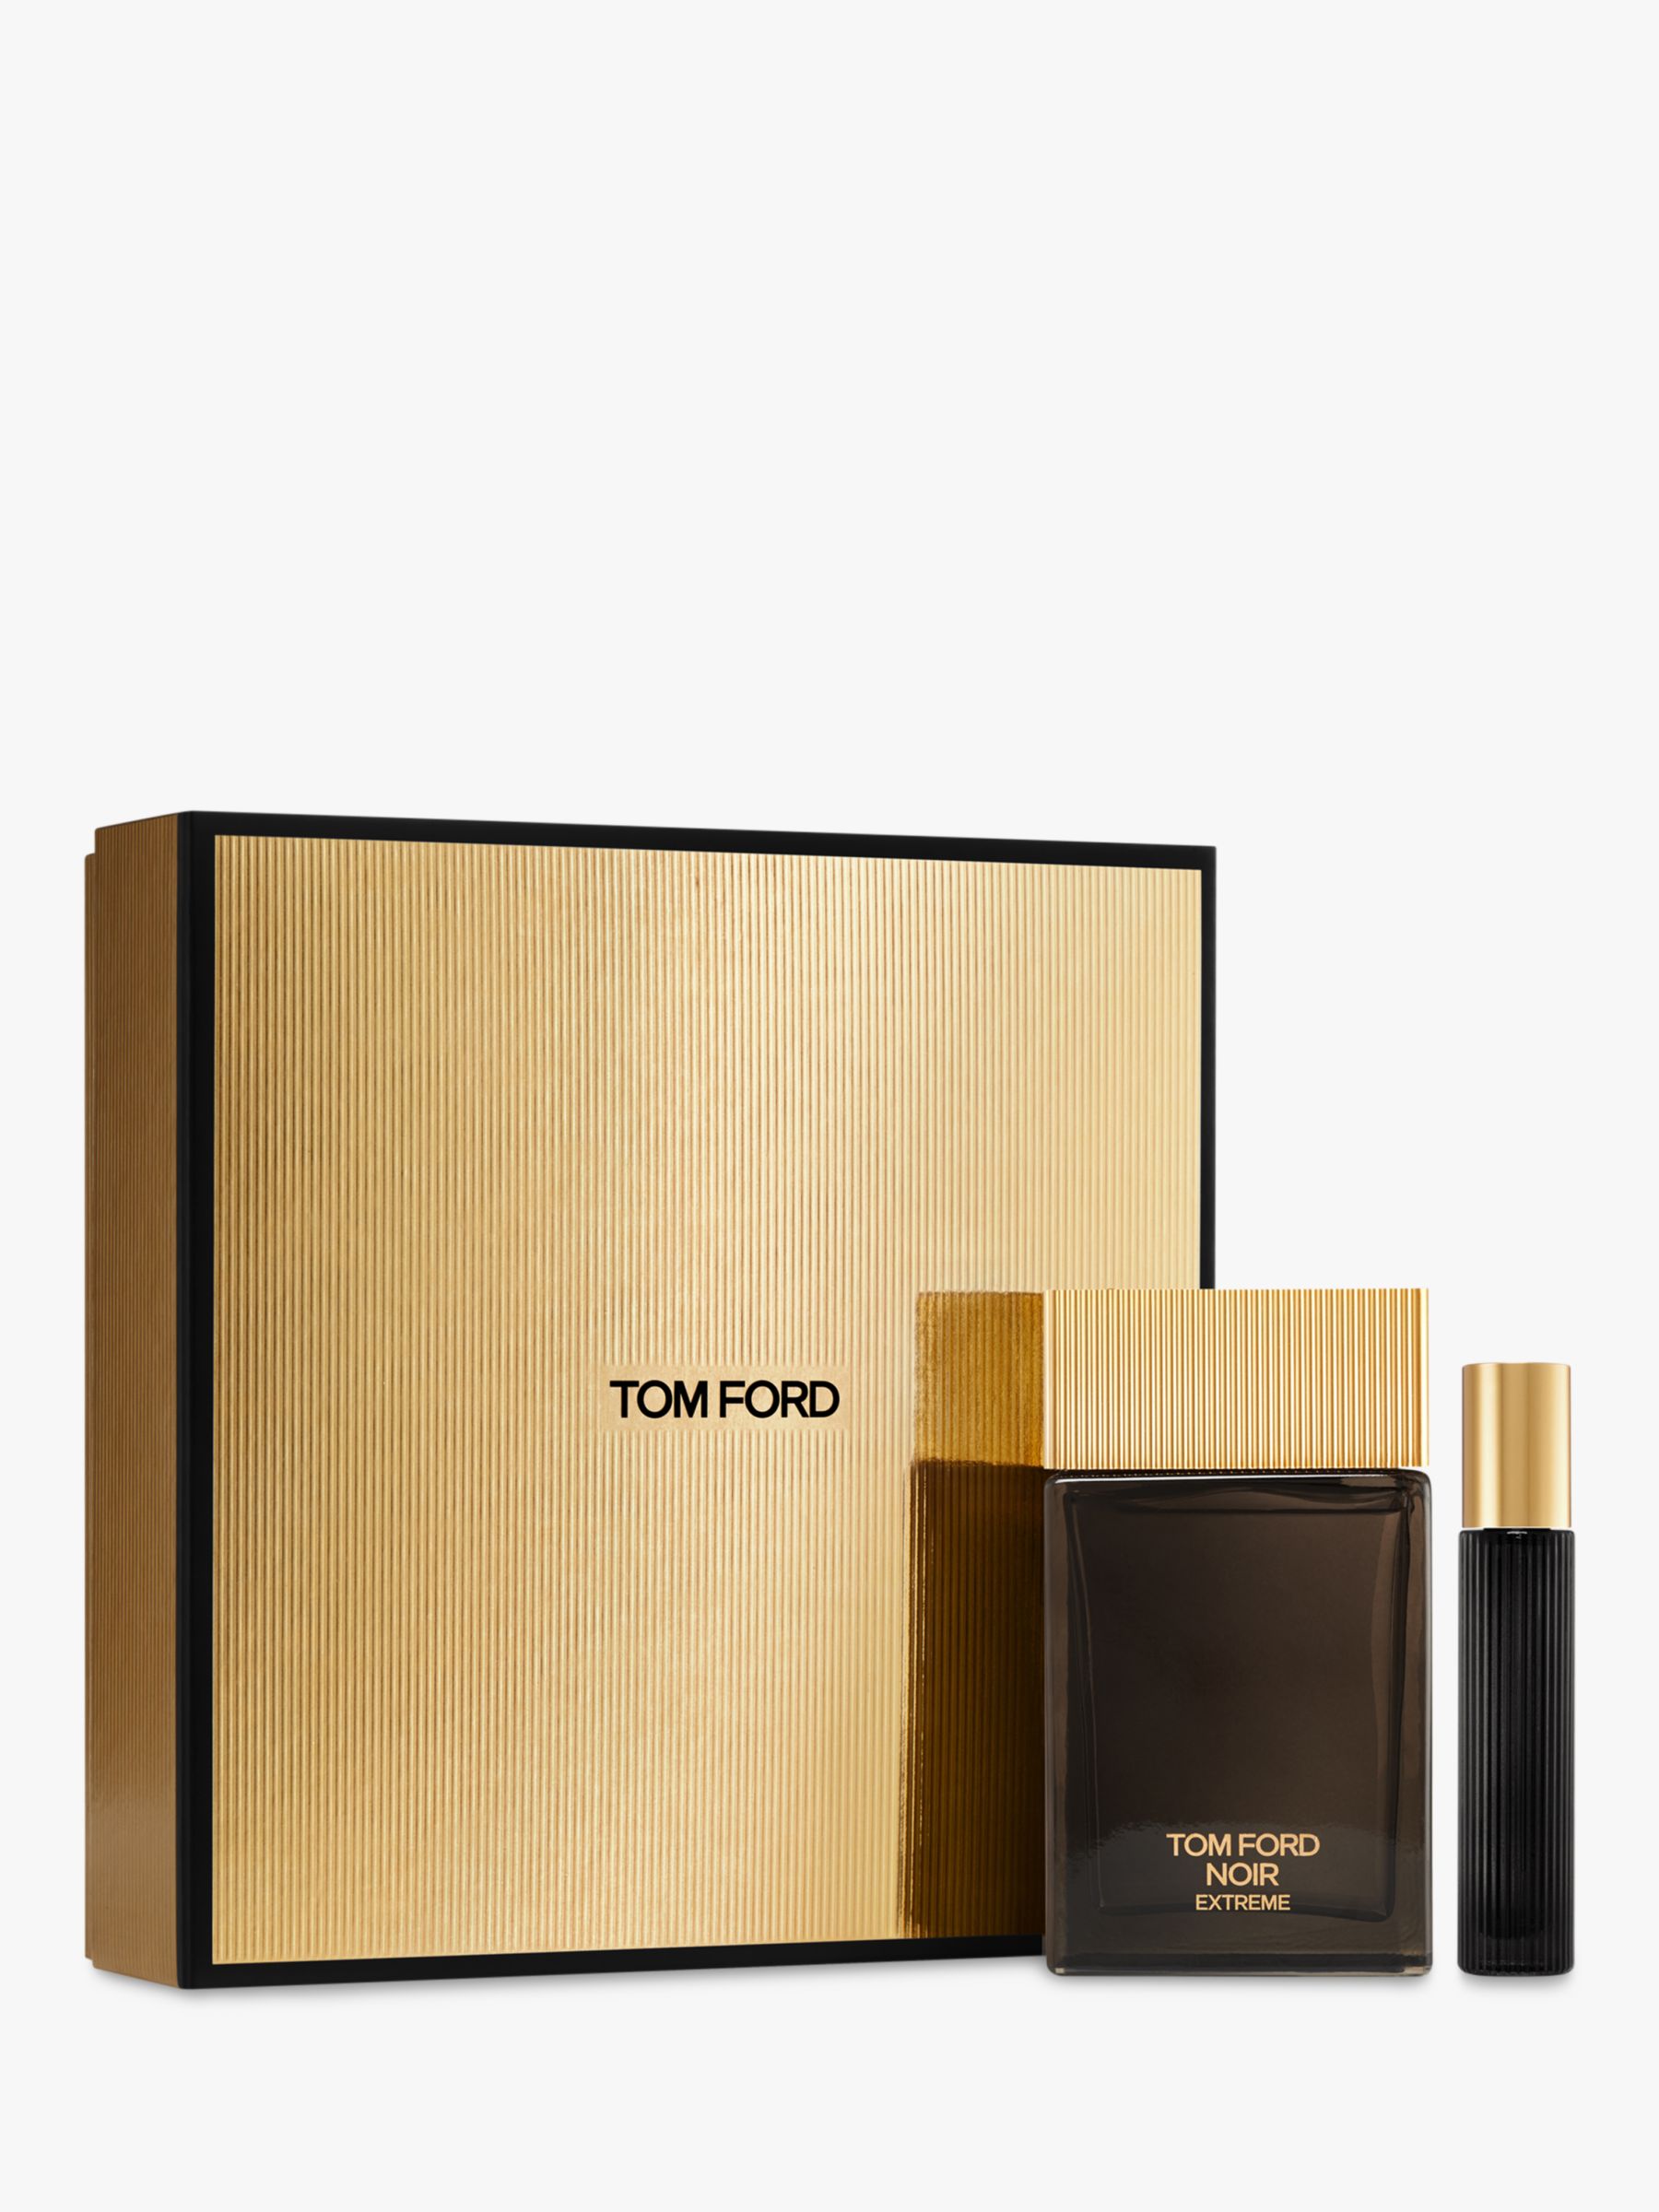 TOM FORD Noir Extreme Collection 100ml Eau de Parfum Gift Set at John ...